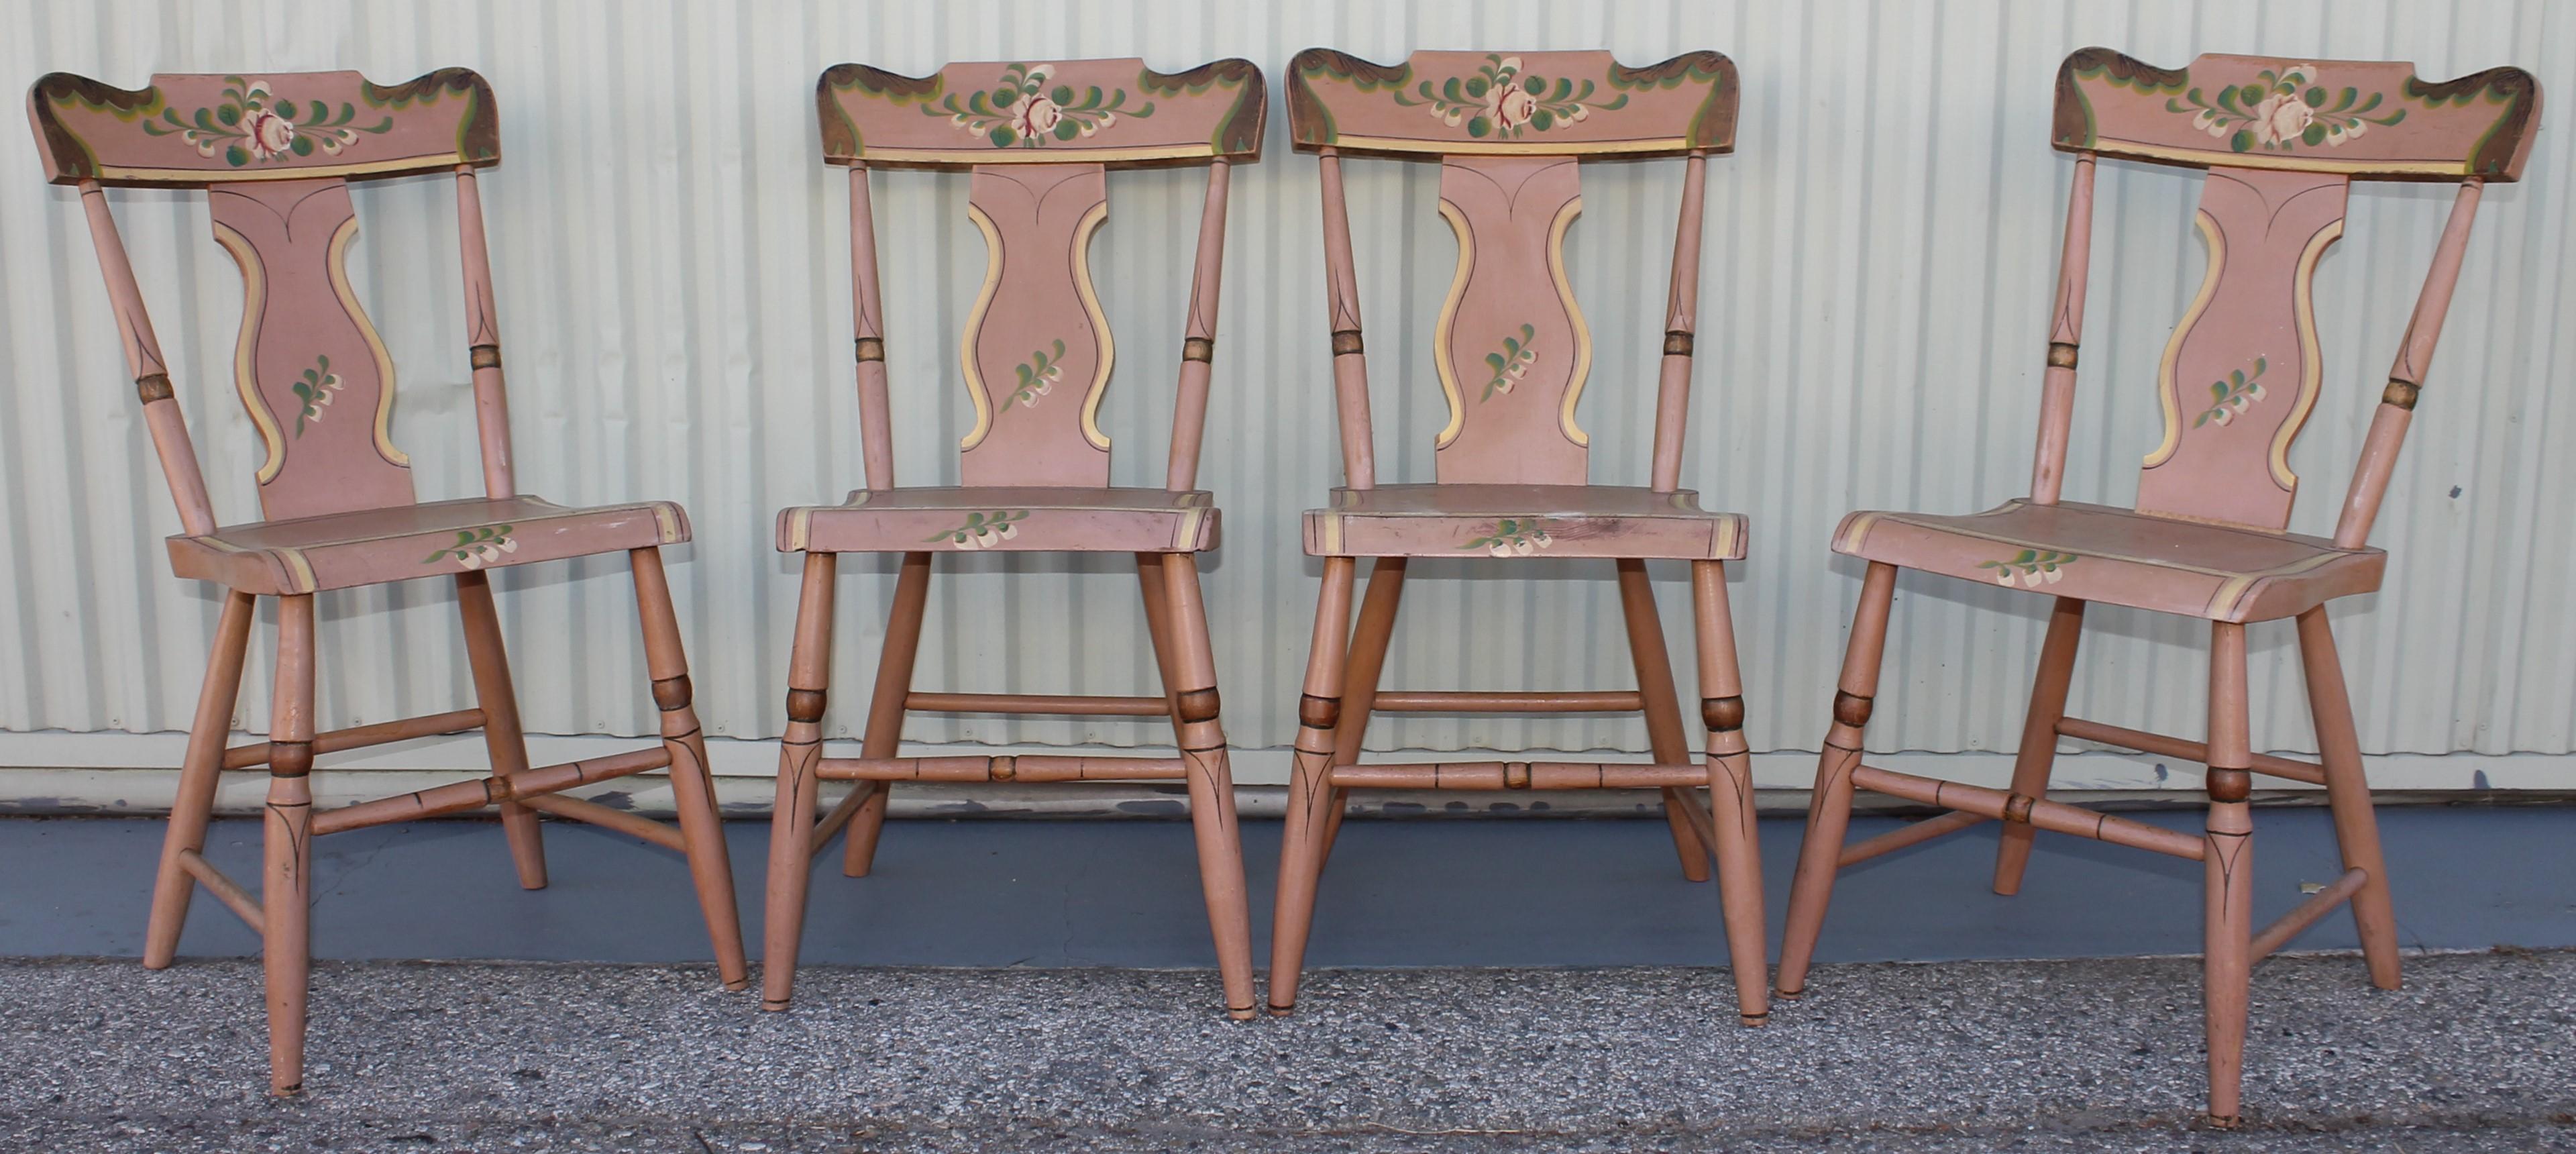 Diese Stühle wurden in Lancaster County, Pennsylvania, gefunden und sind in sehr gutem und stabilem Zustand. Schöner Satz von vier mauvefarbenen, handbemalten Plankenstühlen mit floralem Muster. Schöne Handwerkskunst und elegant und stilvoll. Die